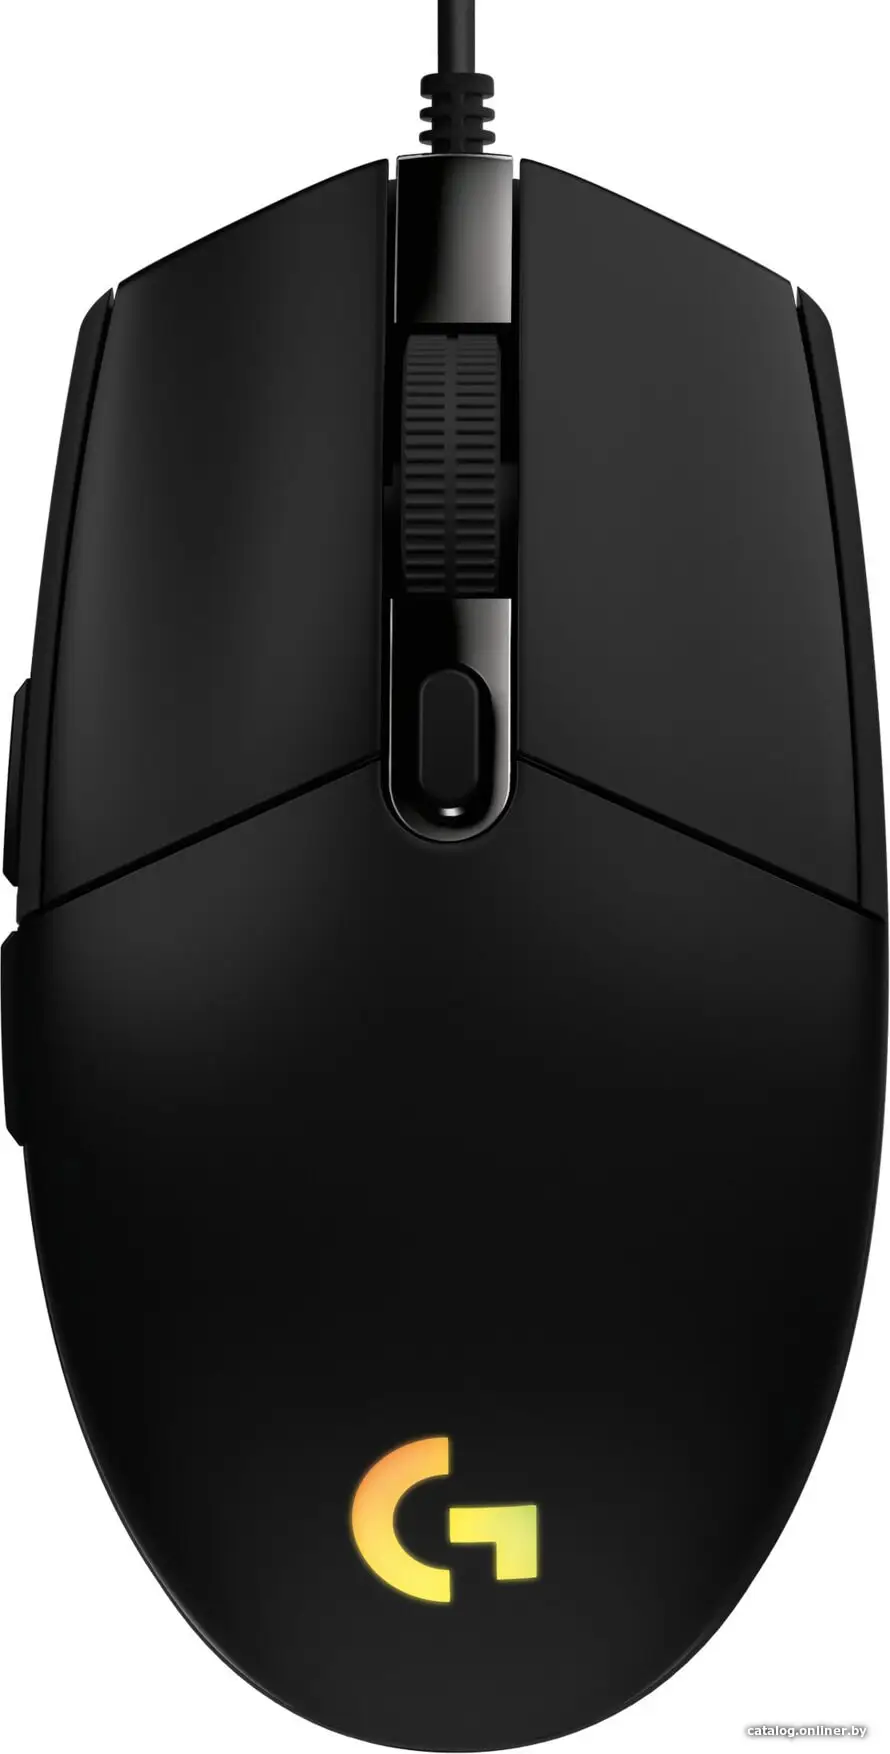 Купить Игровая мышь Logitech G102 Lightsync (черный), цена, опт и розница